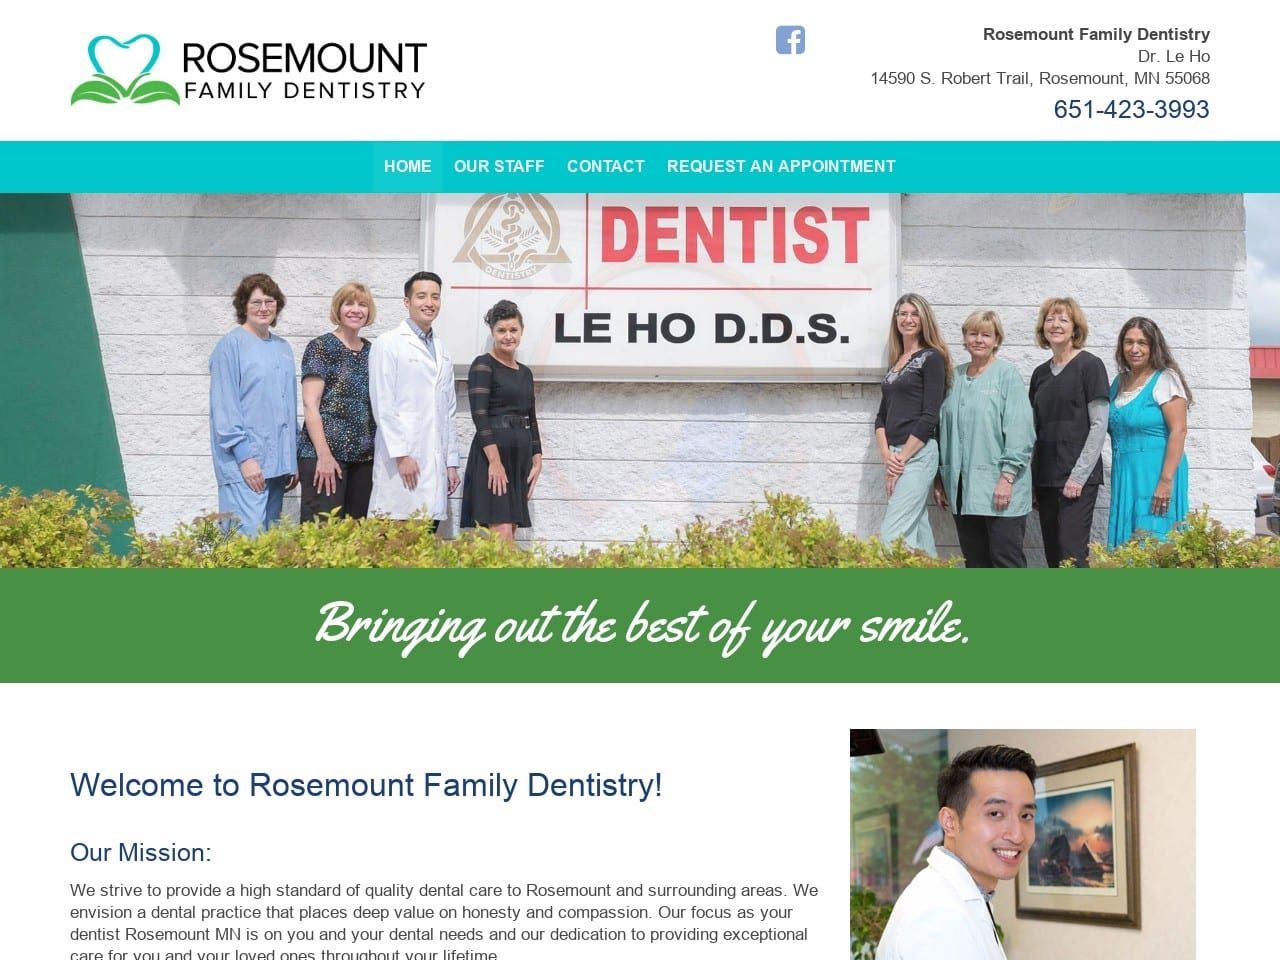 Rosemount Family Dentist Website Screenshot from rosemountfamilydentistry.com